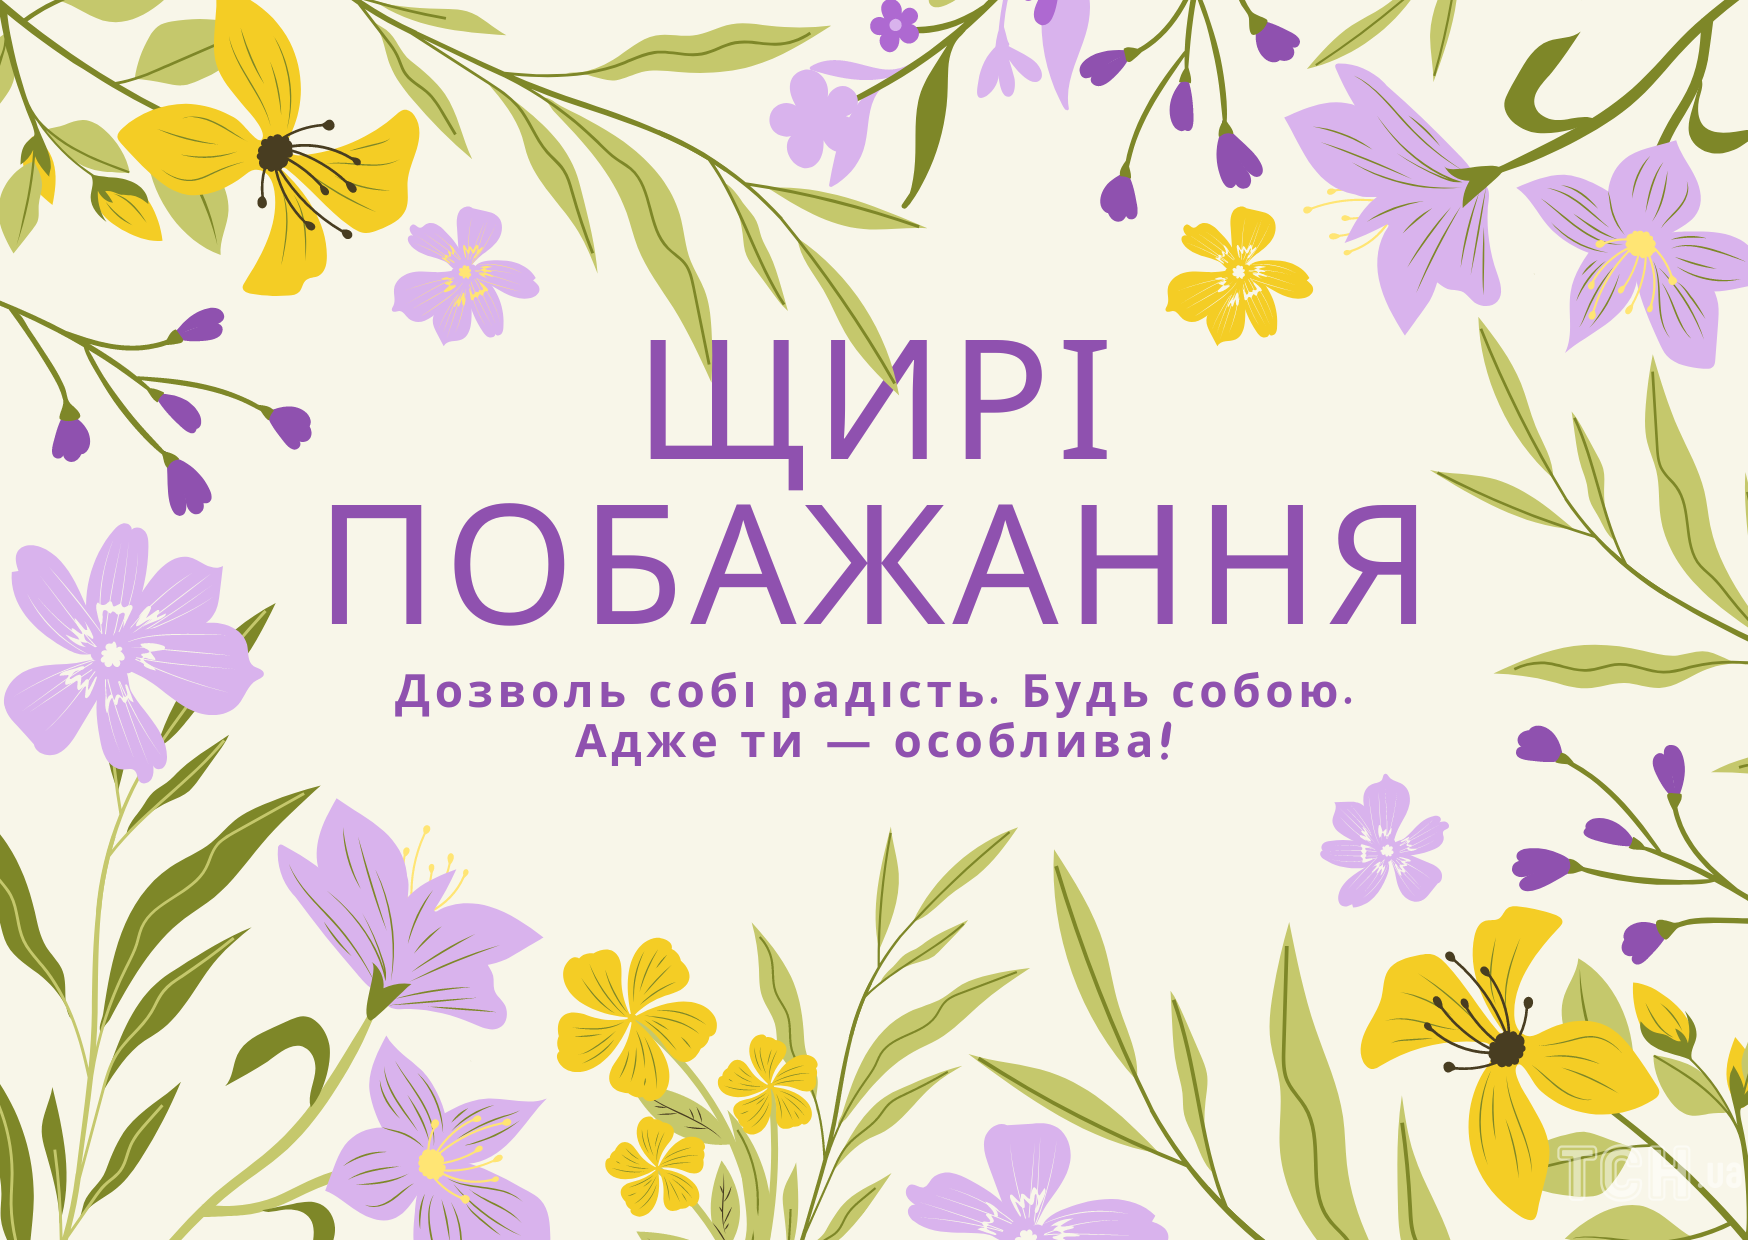 З 8 Березня 2023 року: картинки українською, привітання в прозі та віршах до Міжнародного жіночого дня 2